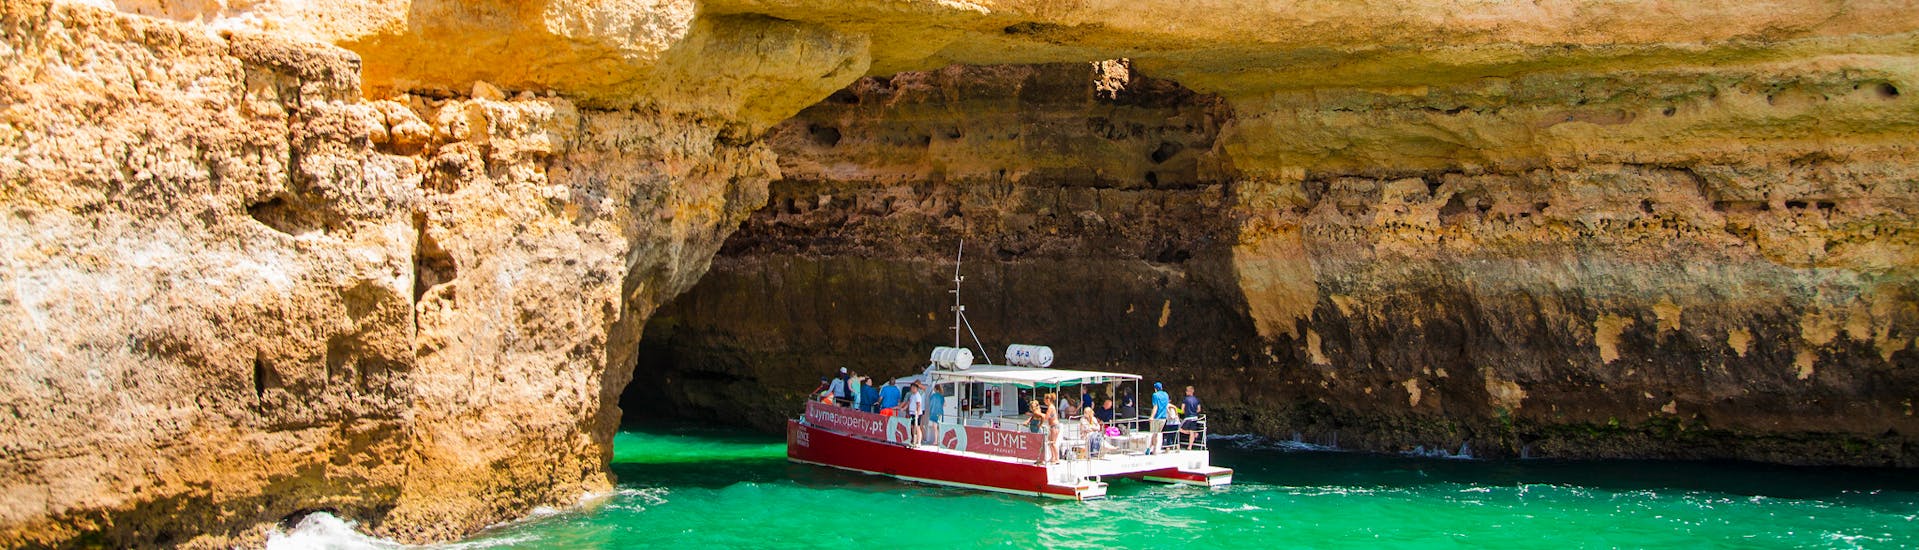 Diverse barche visitano una grotta in riva al mare durante una gita in barca.